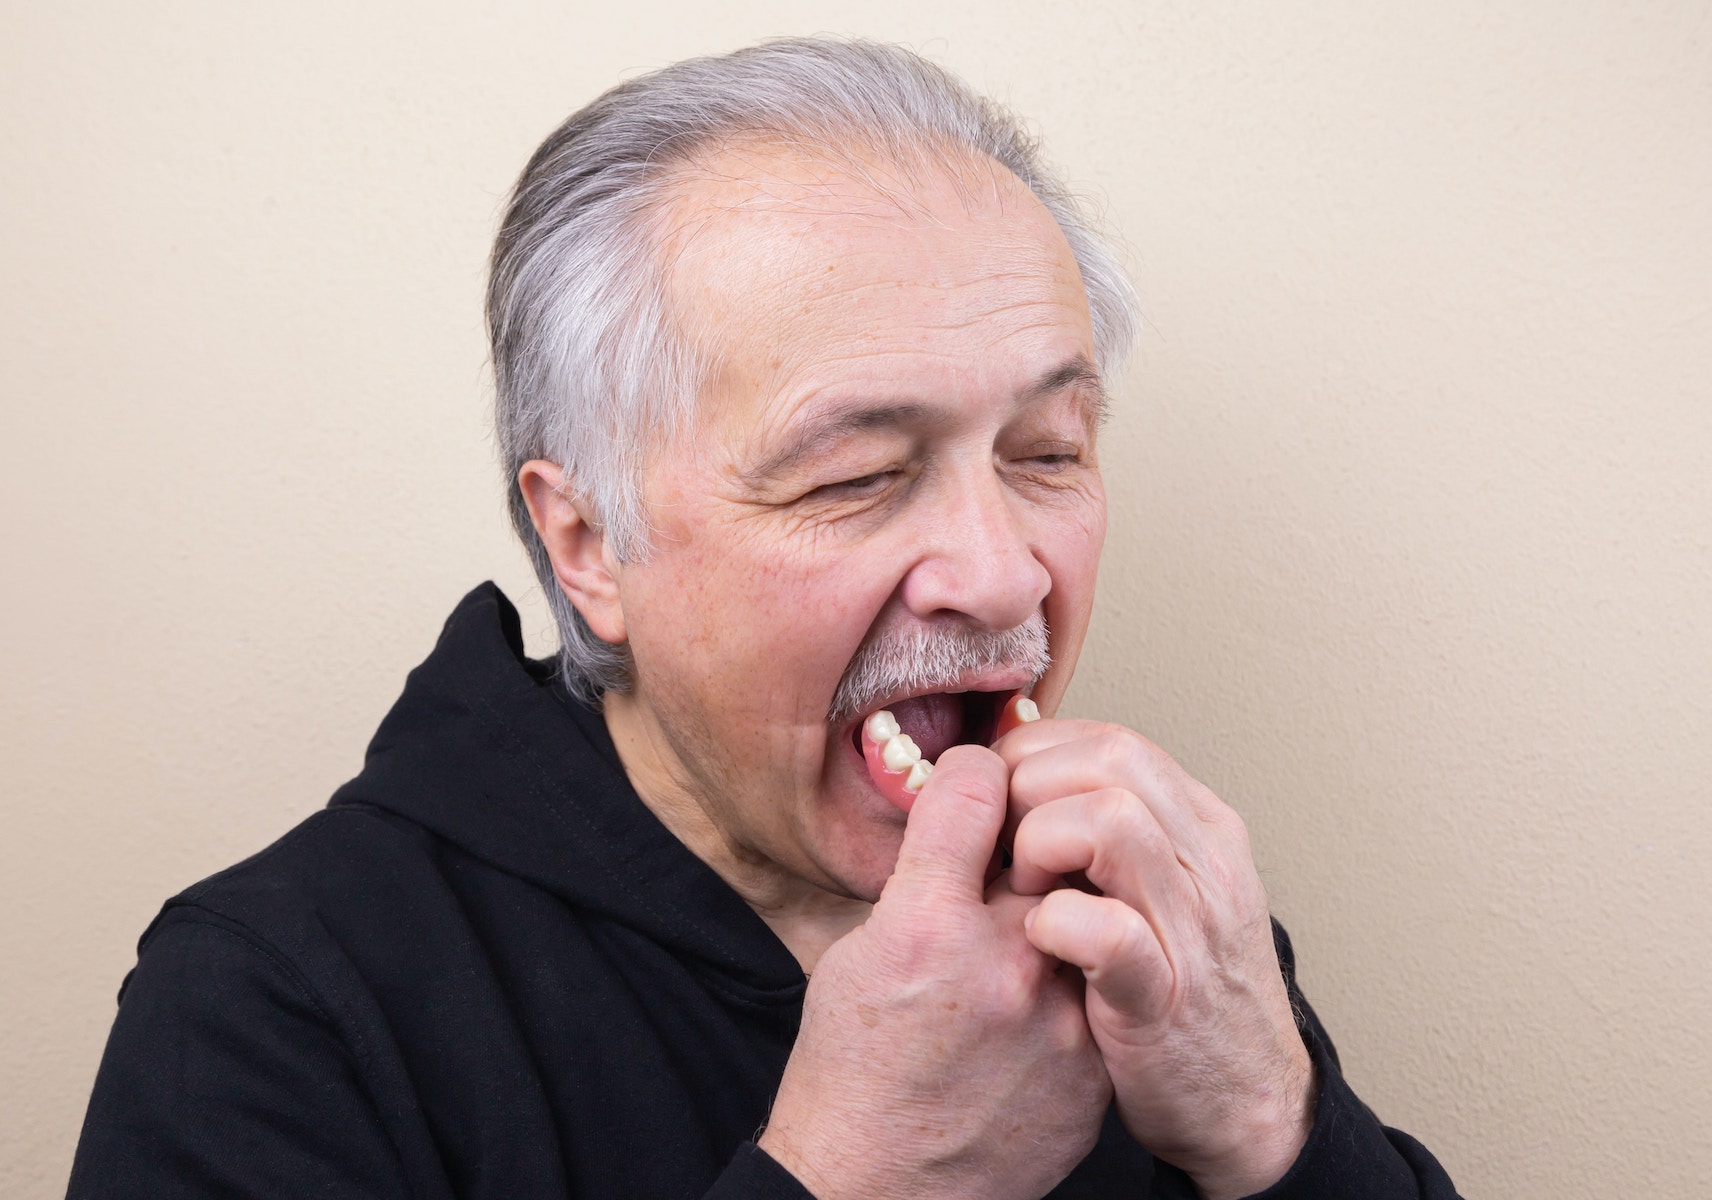 Zahnprothese Einsetzen